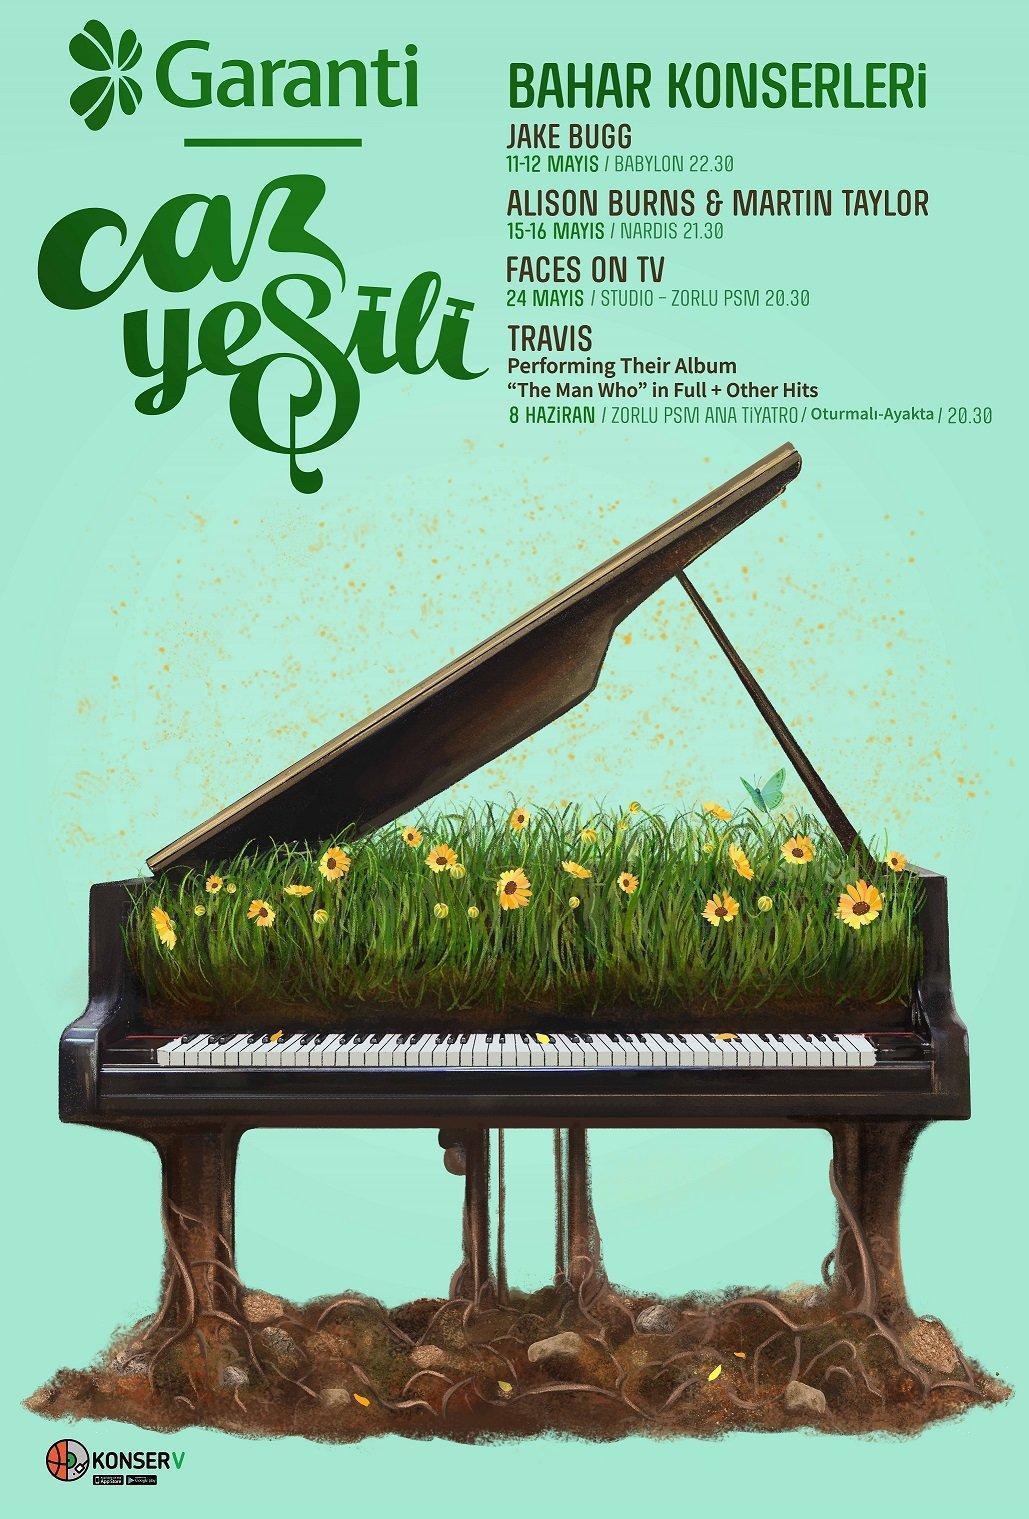 Garanti Caz Yeşili konserleri  bahar aylarında da dolu dizgin devam ediyor